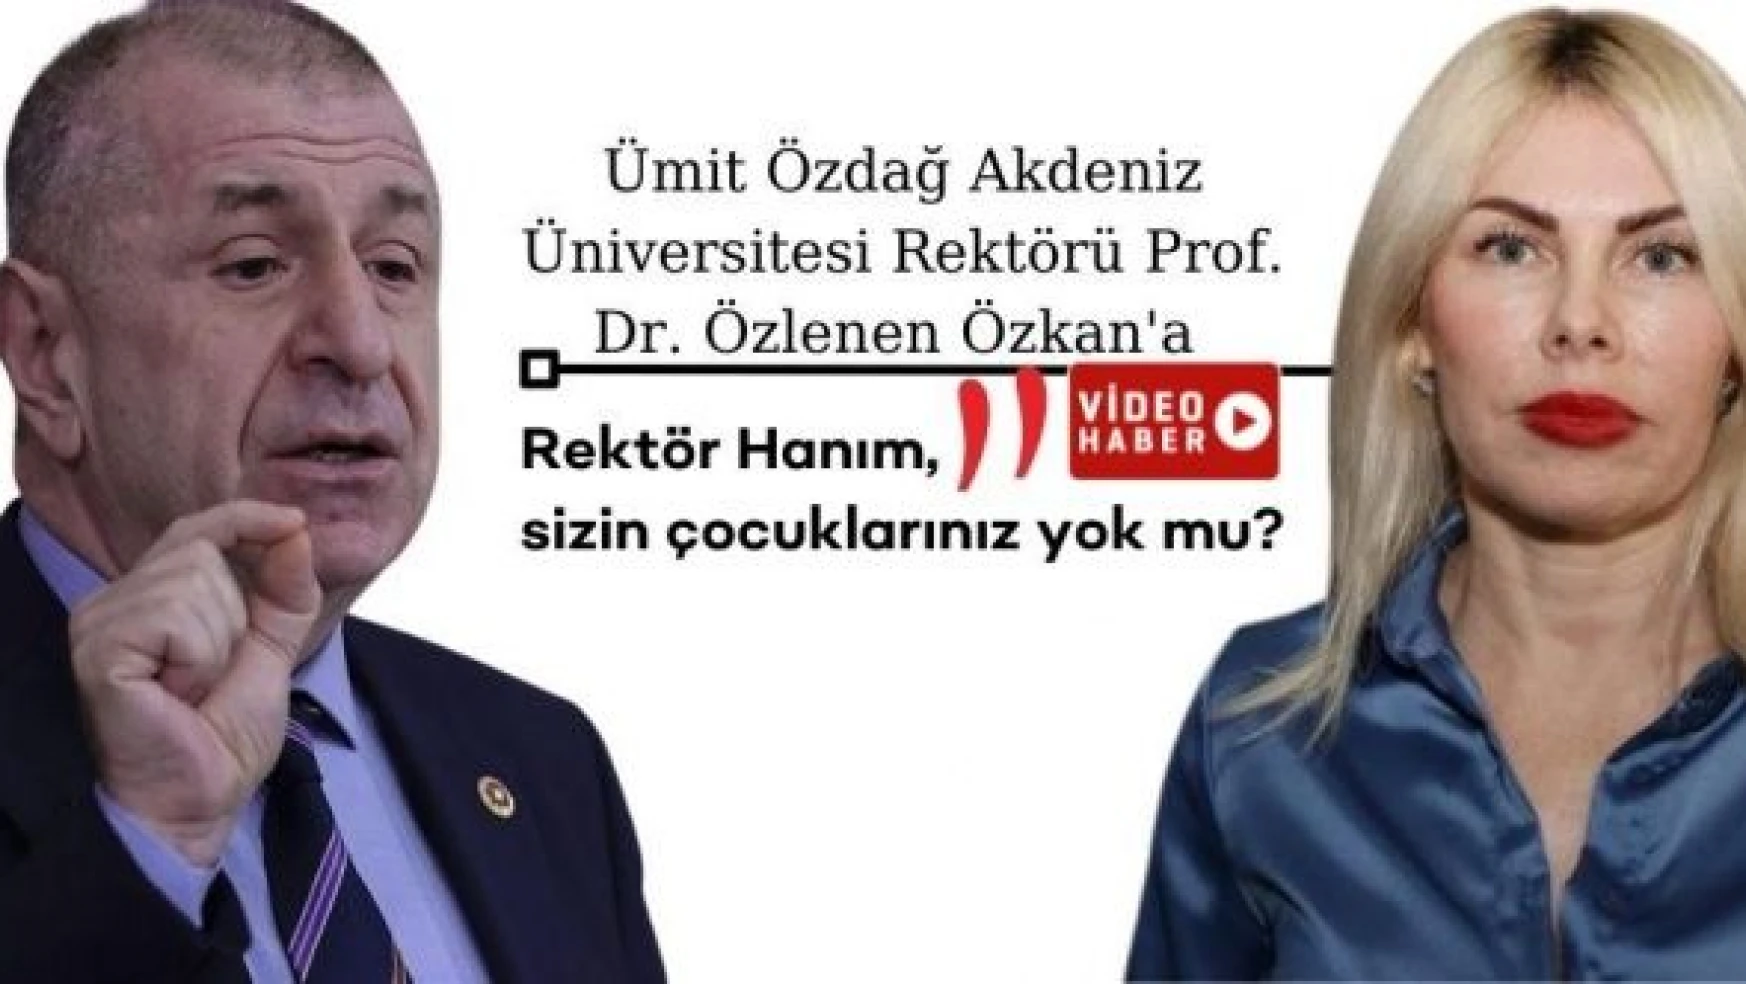 Ümit Özdağ'dan Akdeniz Üniversitesi Rektörü'ne: &quotRektör Hanım, sizin çocuğunuz yok mu?"